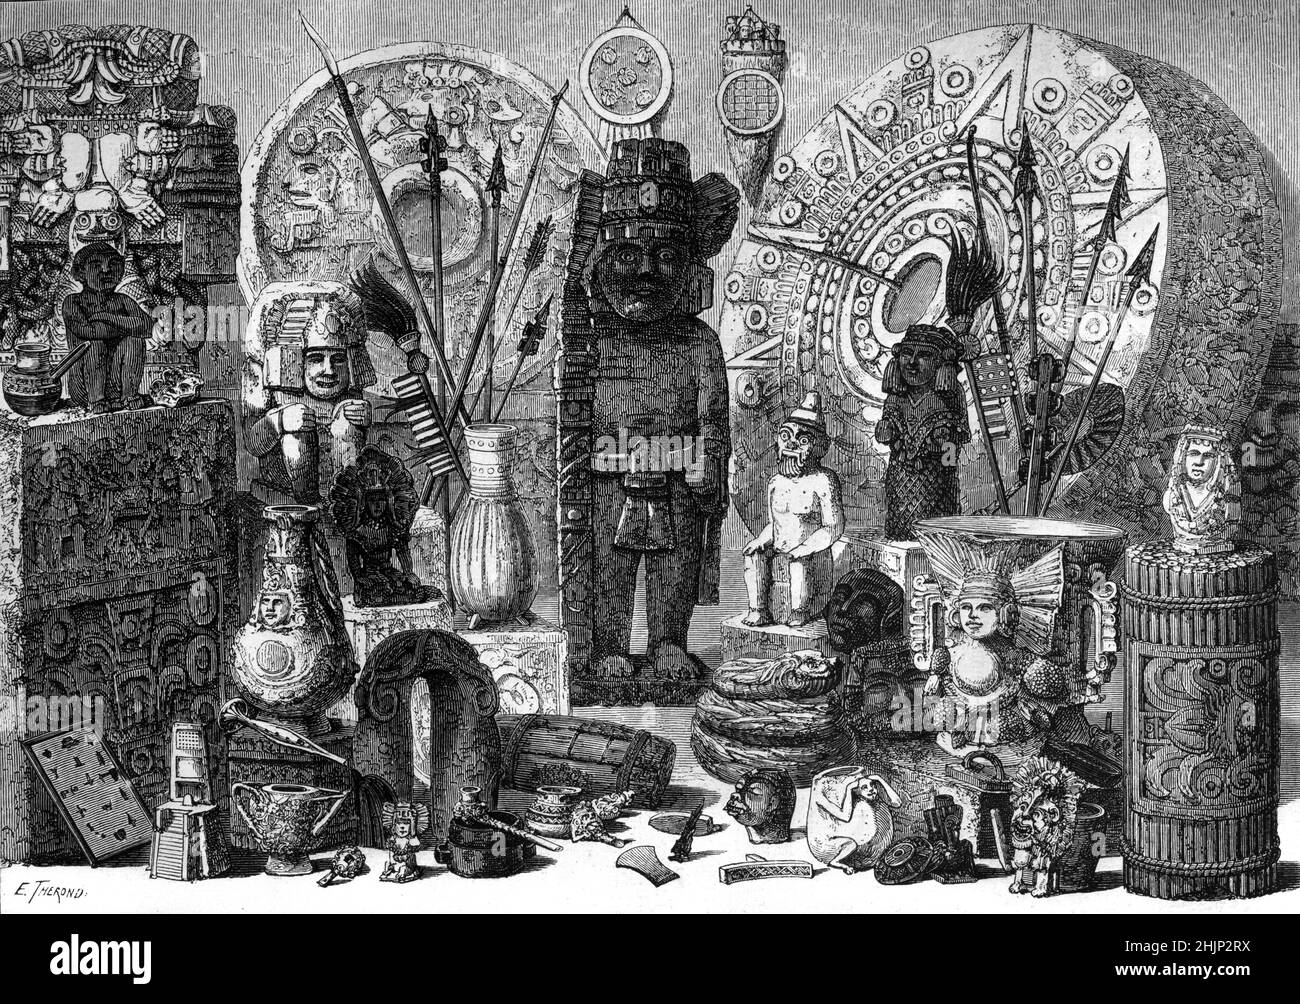 Collezione o esposizione di antichità messicane nel Museo Nazionale Messicano, ora il Museo Nazionale di Antropologia a Città del Messico Messico Messico. 1865 Illustrazione o incisione vintage. Foto Stock